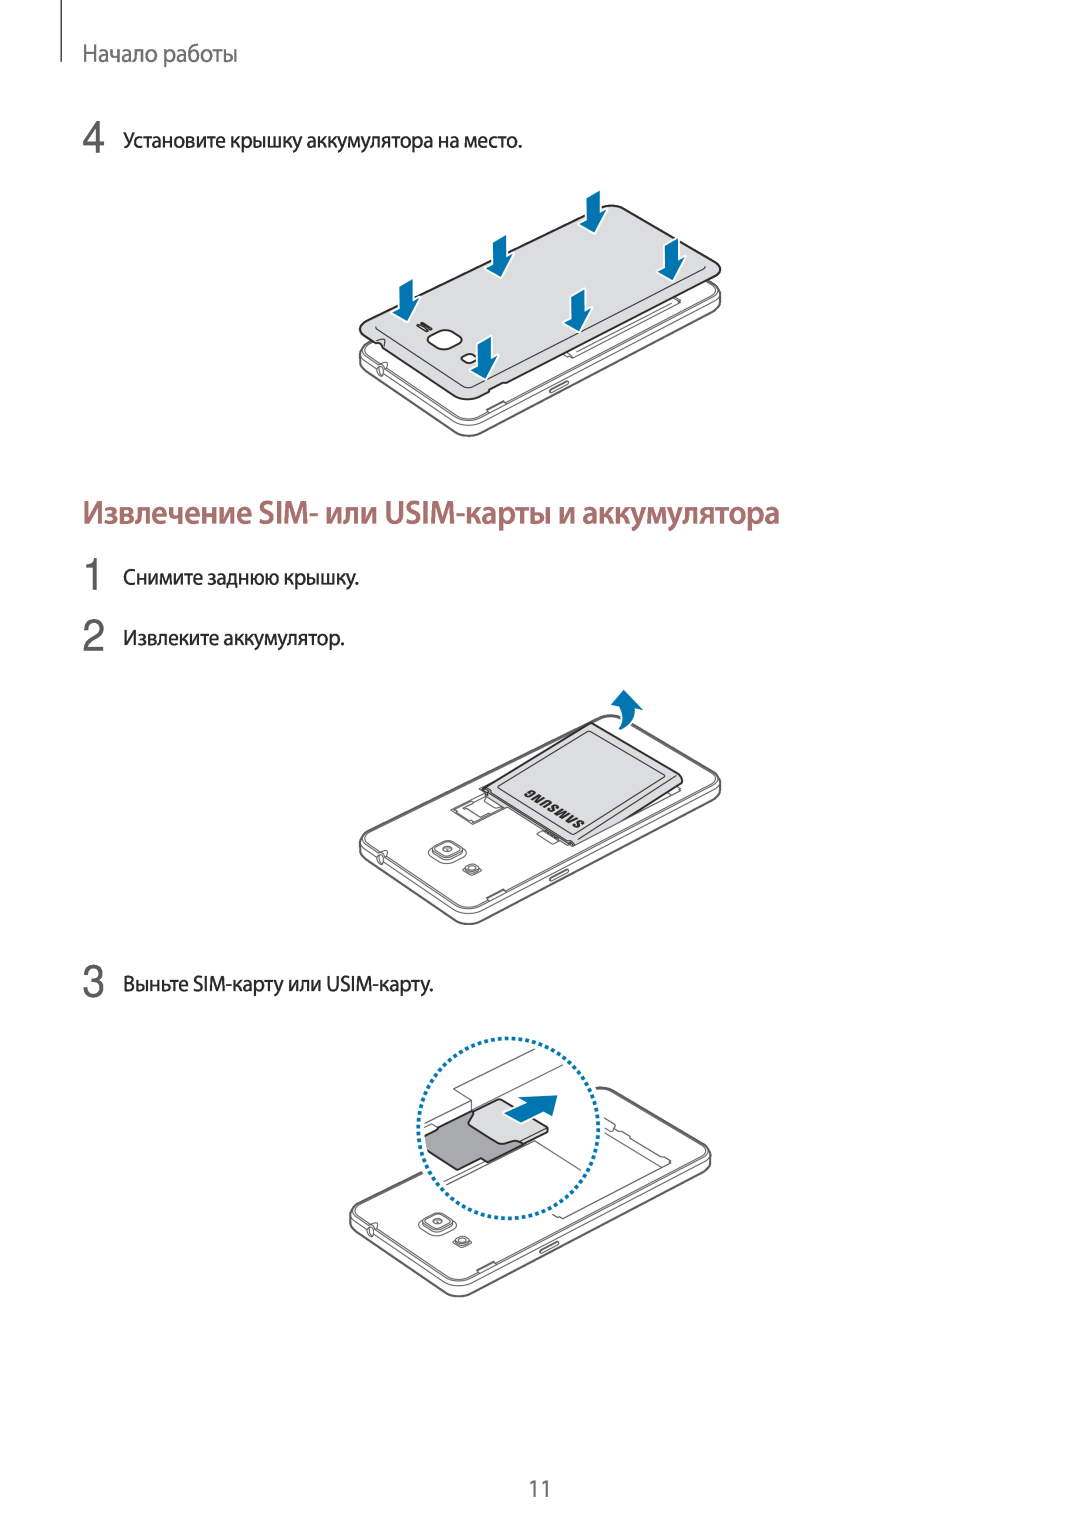 Samsung SM-G531FZDASER Извлечение SIM- или USIM-карты и аккумулятора, Начало работы, 3 Выньте SIM-карту или USIM-карту 